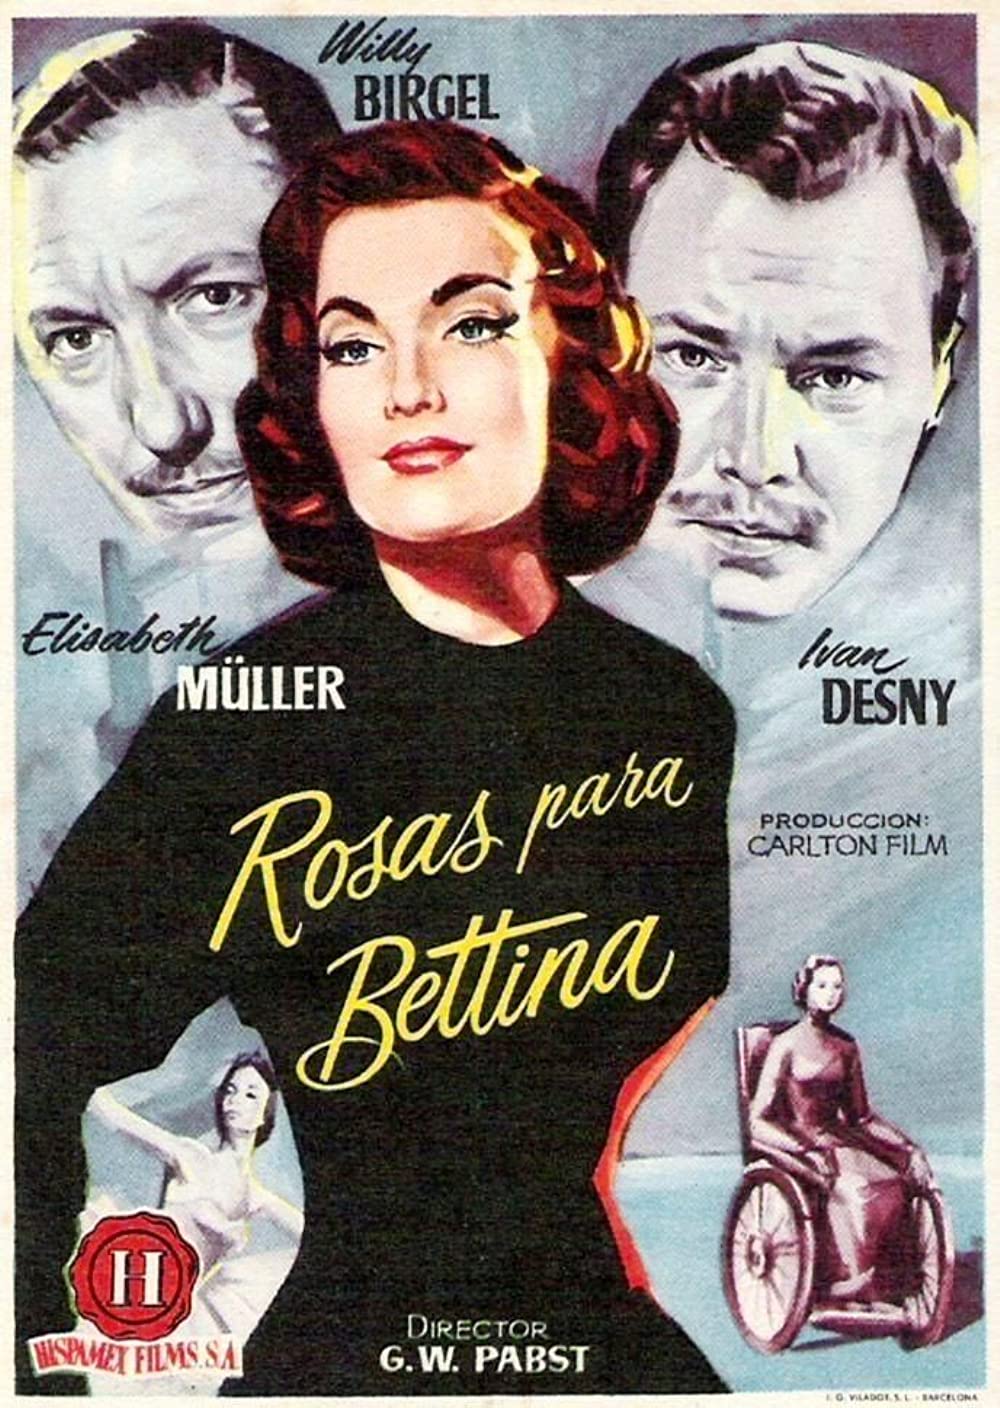 Filmbeschreibung zu Rosen für Bettina